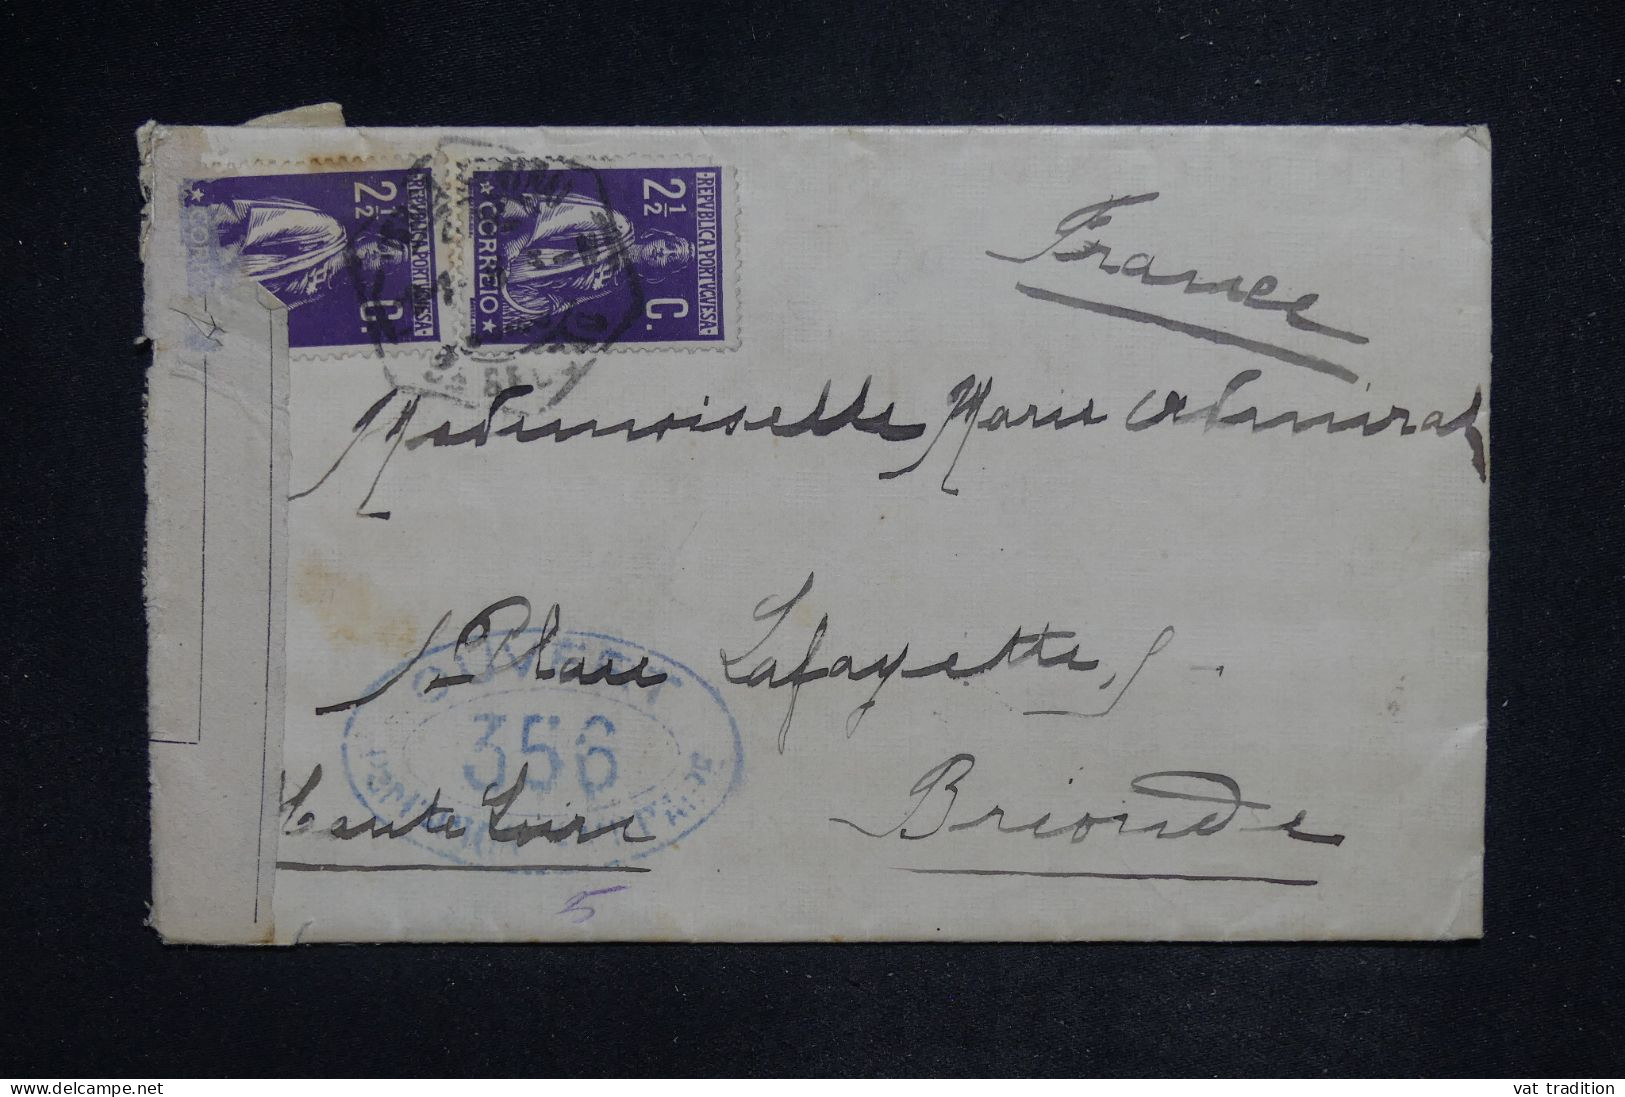 PORTUGAL - Lettre Pour La France Censurée à L'arrivée - A 2741 - Postmark Collection